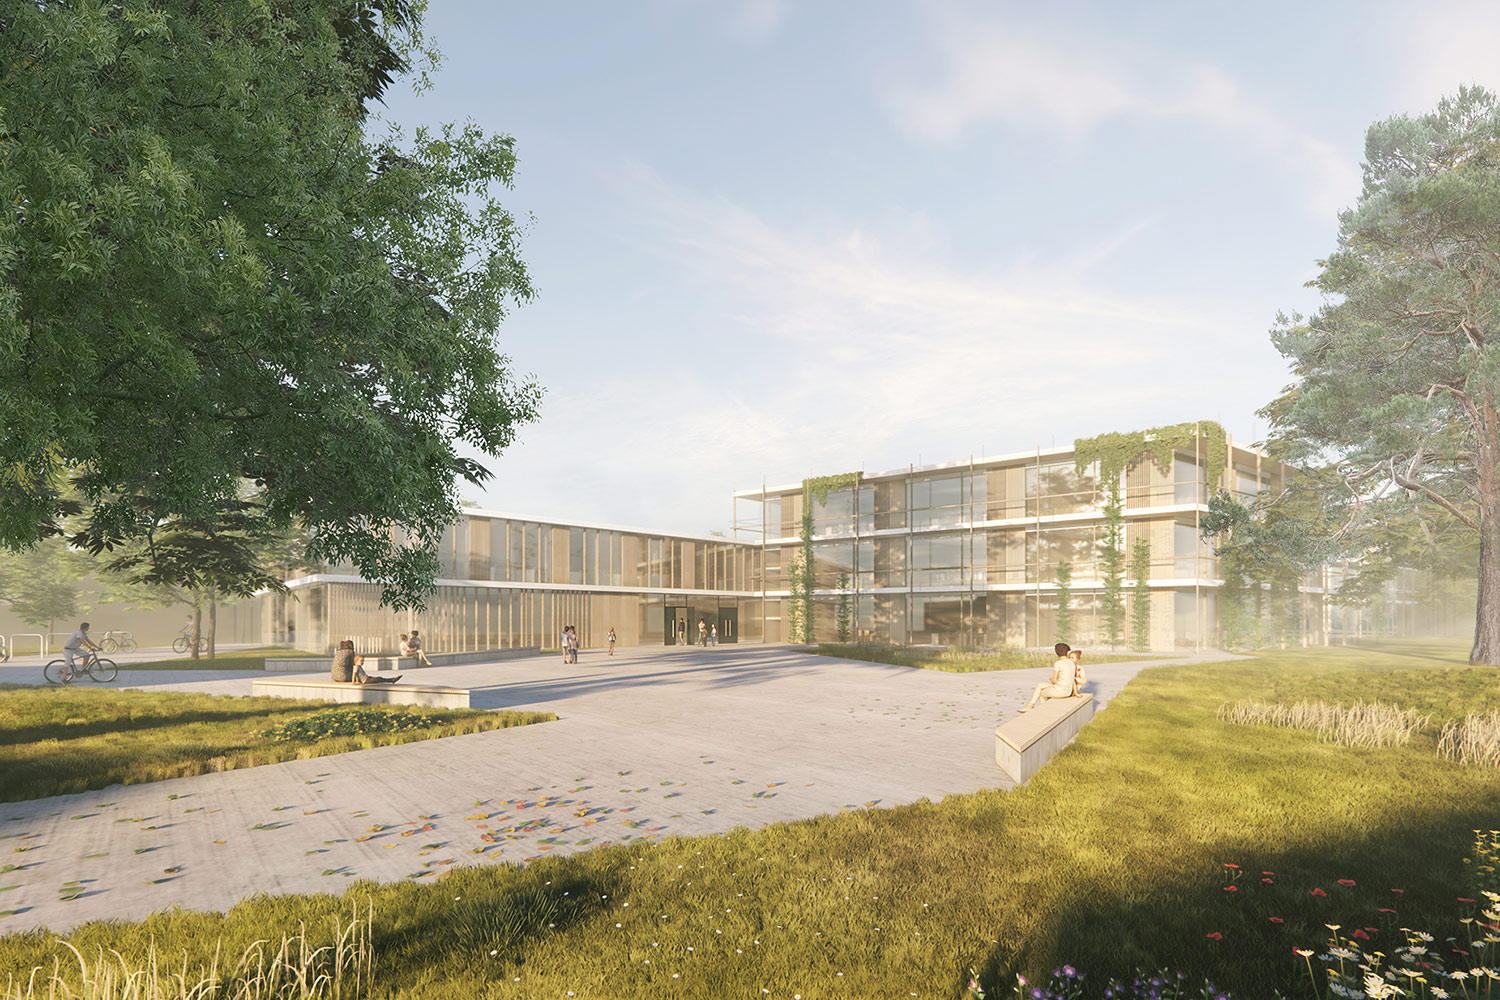 Anerkennung für den Neubau der Mittelschule Nord-Ost Oberhaunstadt, Ingoldstadt, Außenraumperspektive